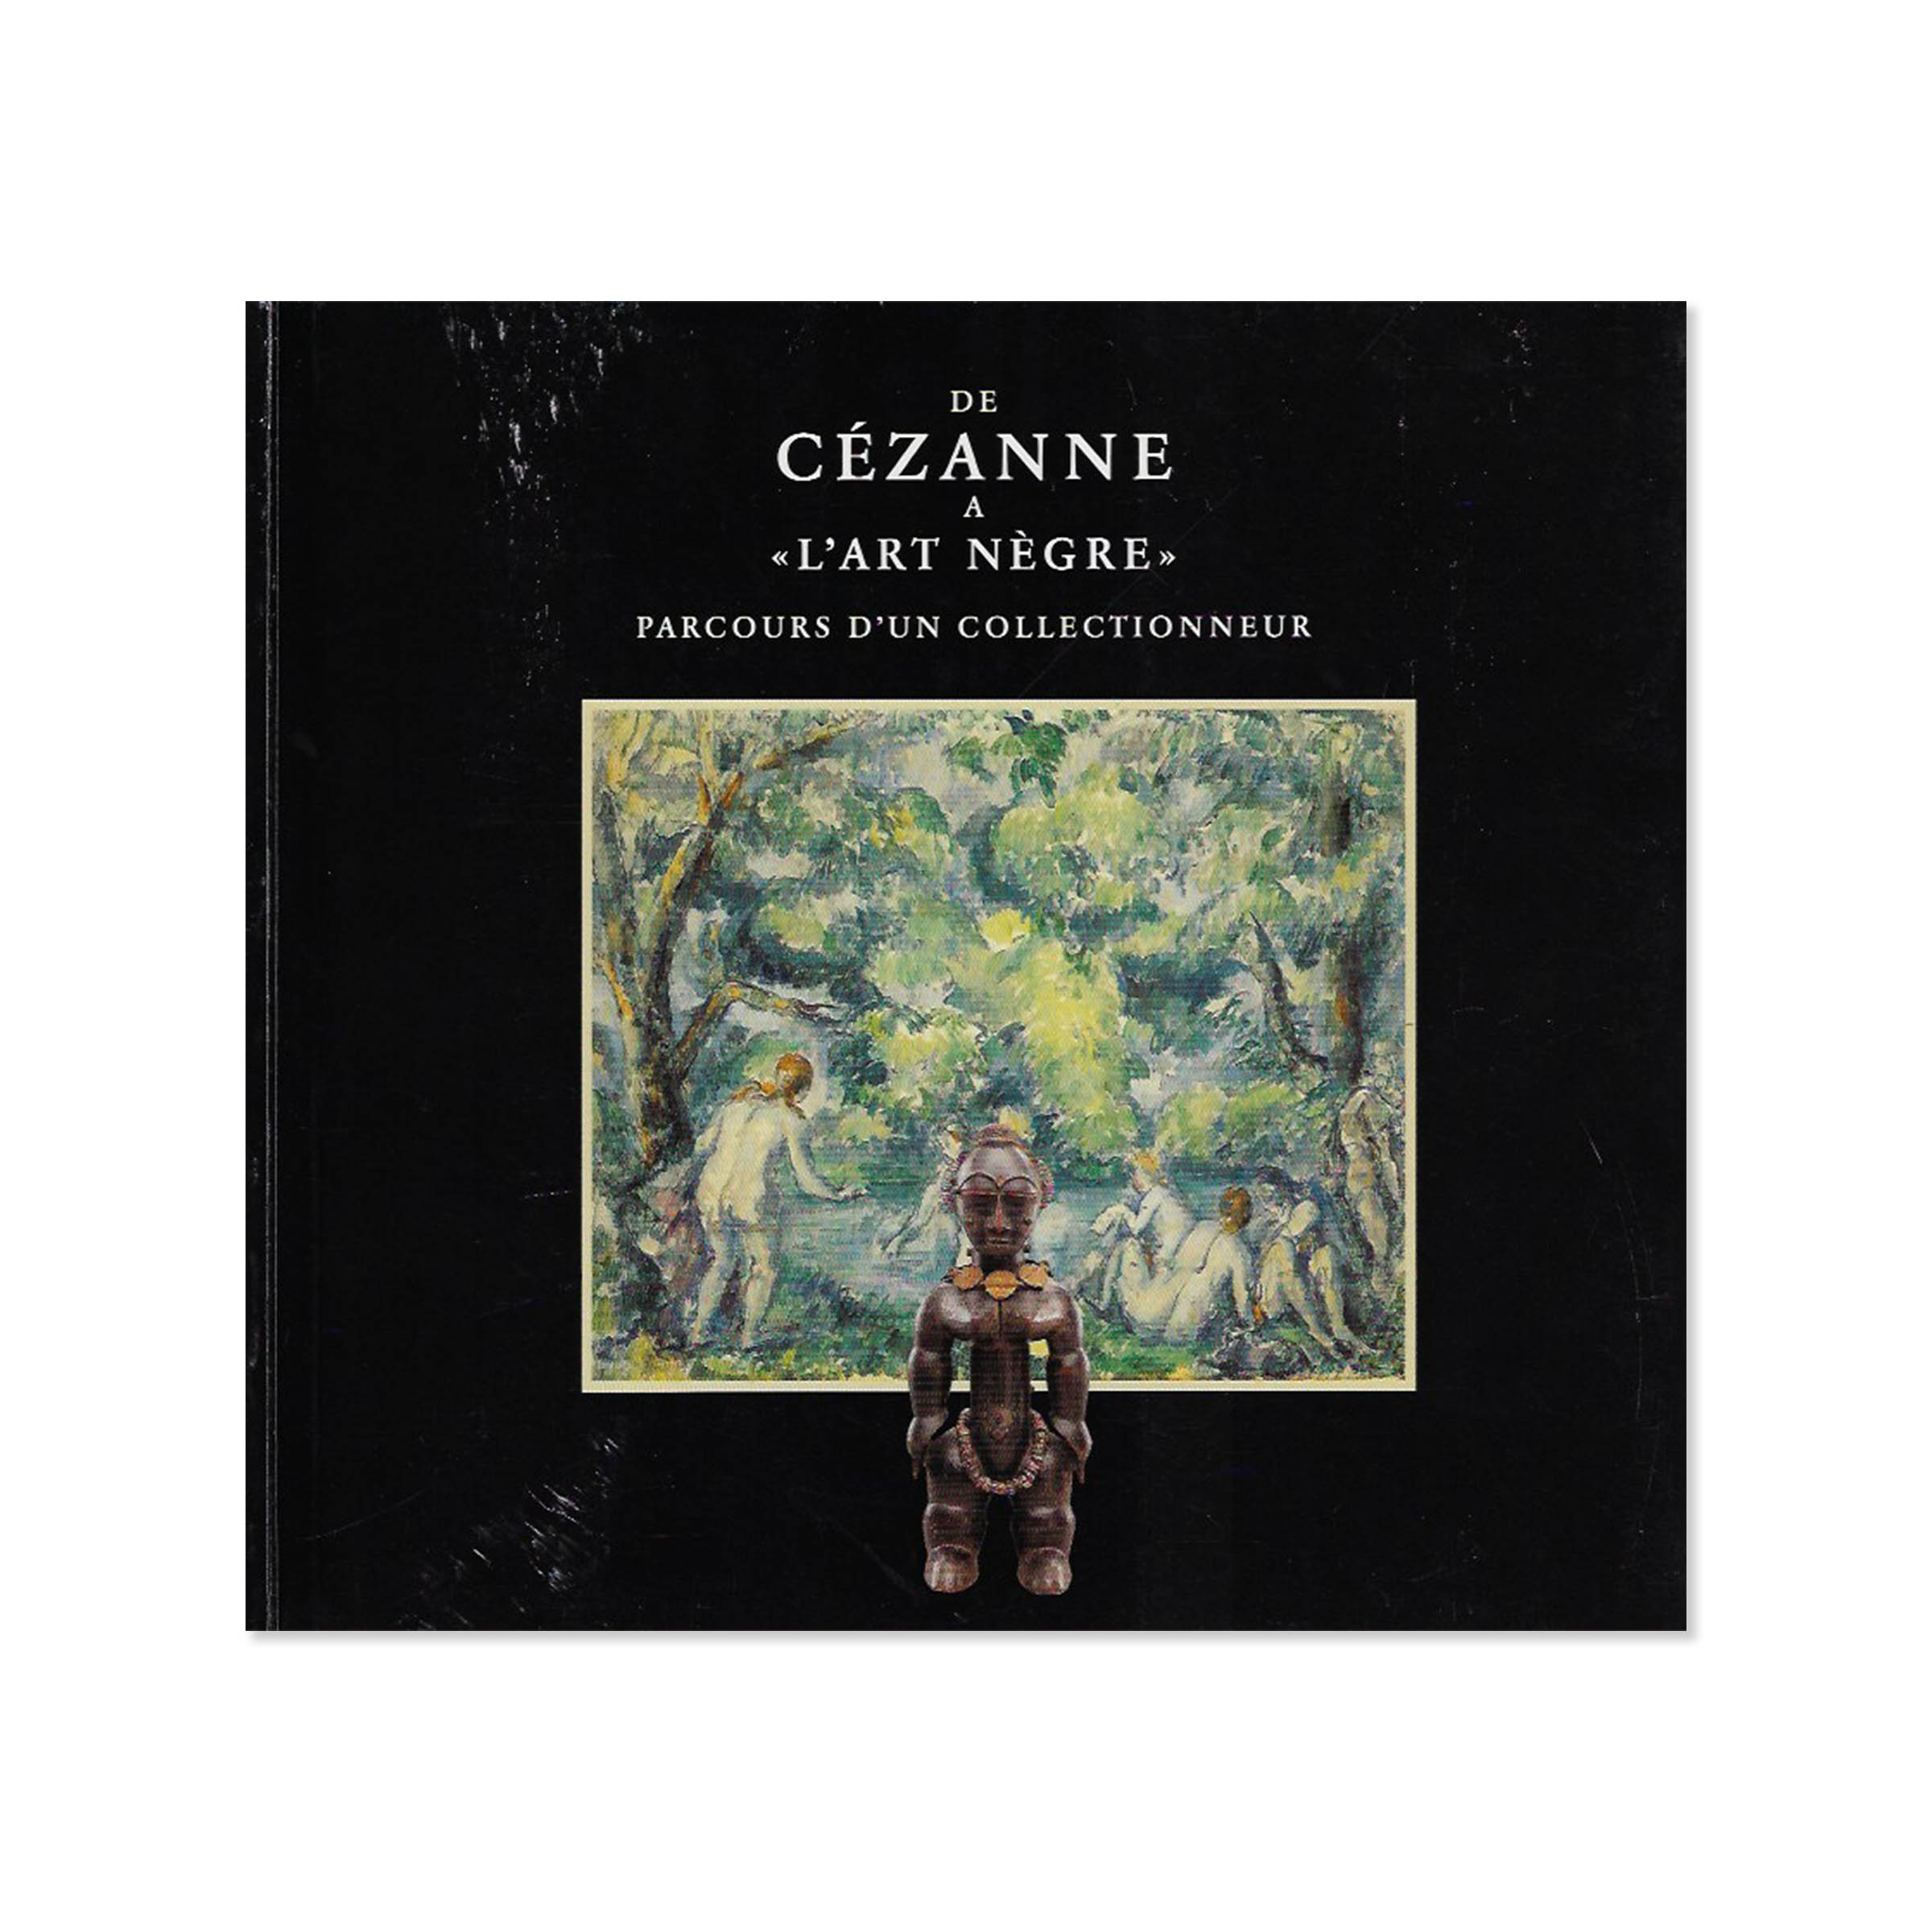 Cézanne Art negre. Cover view